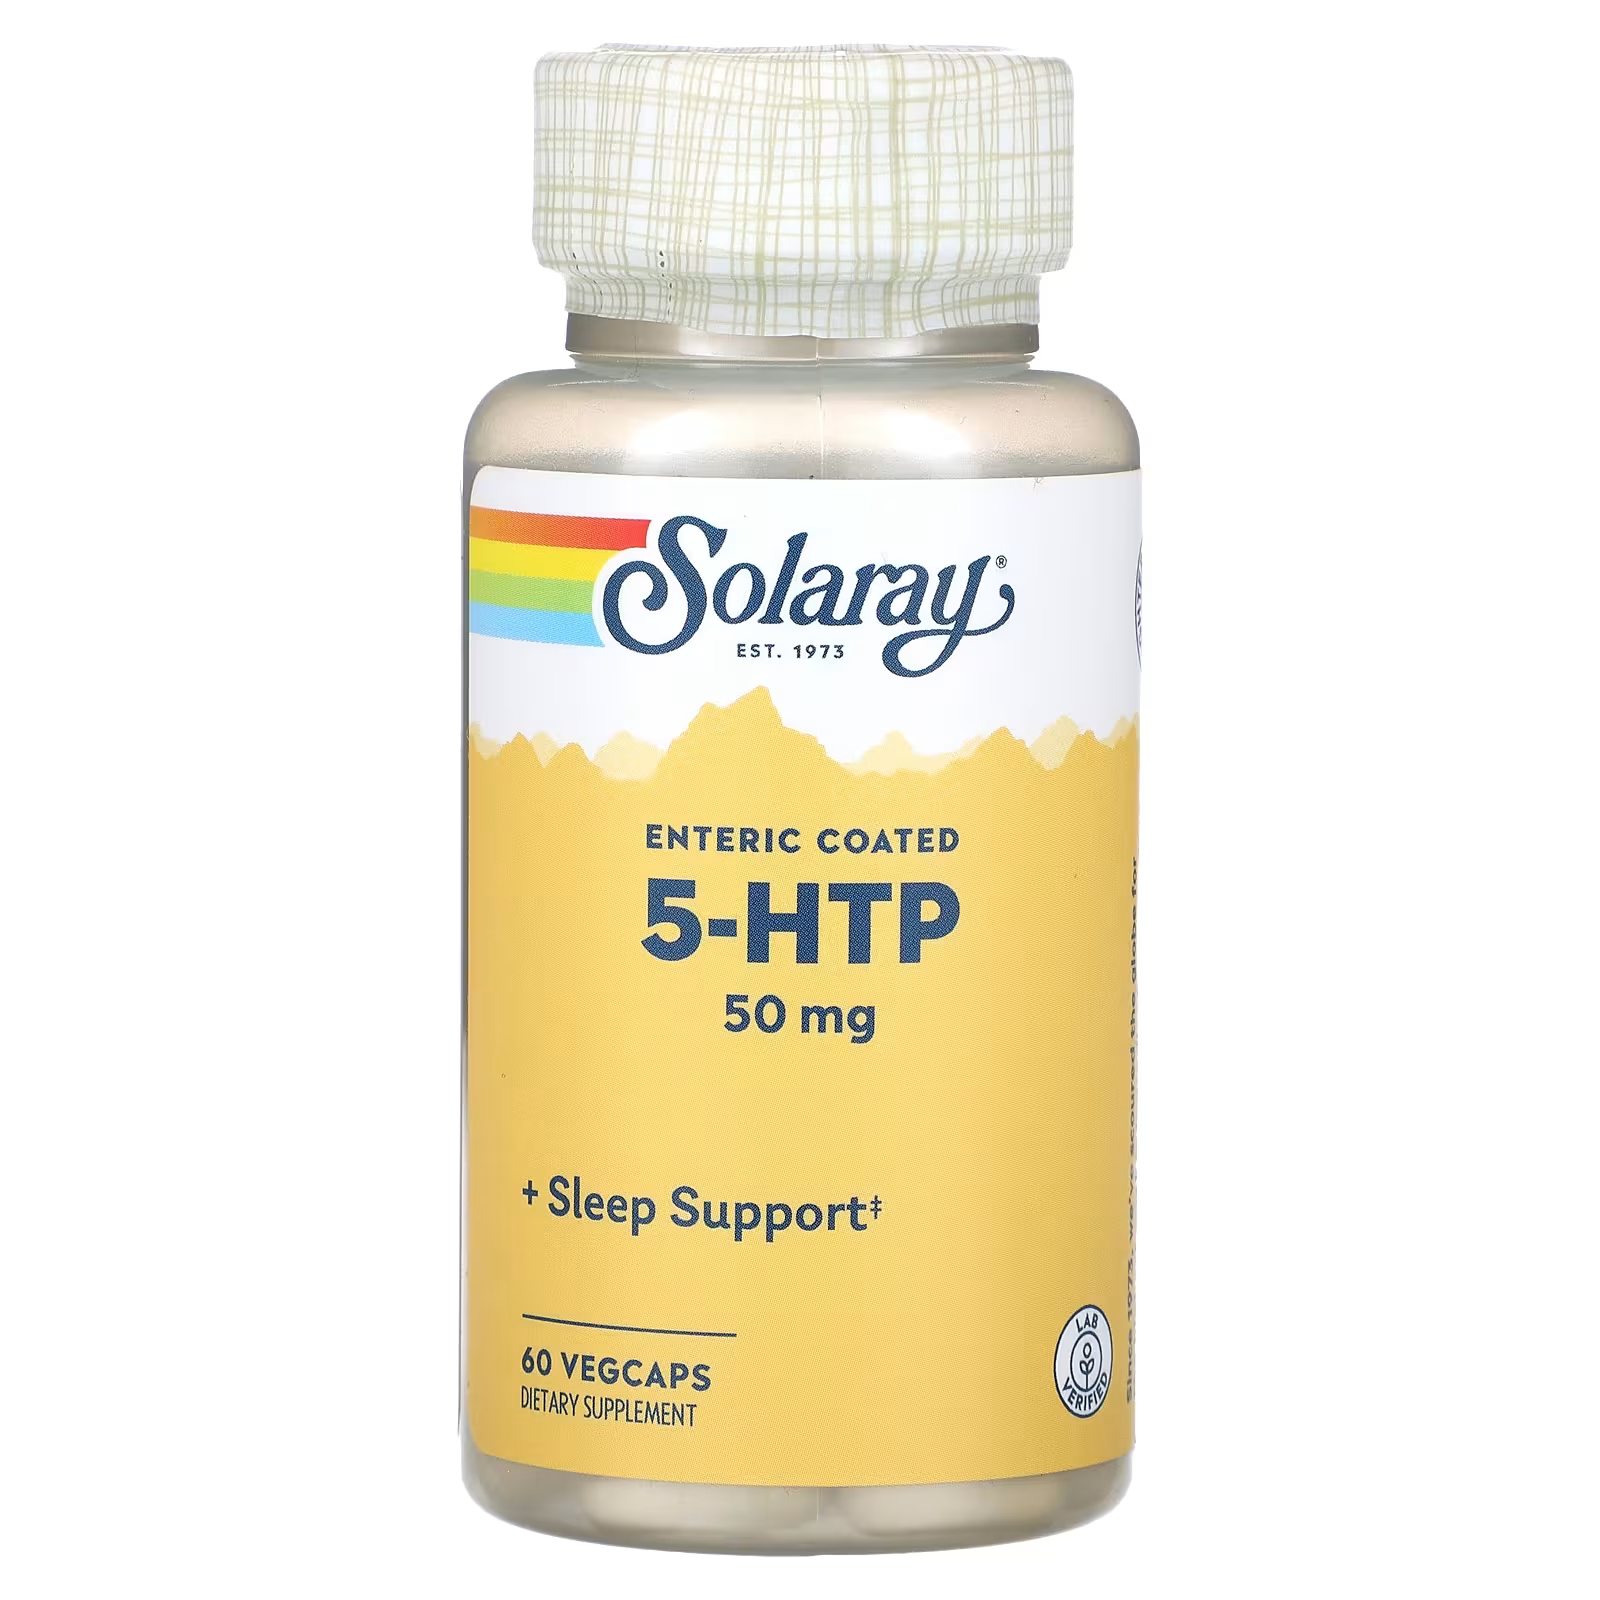 Пищевая добавка Solaray 5-HTP 50 мг, 60 капсул пищевая добавка vital nutrients 5 htp 50 мг 60 веганских капсул